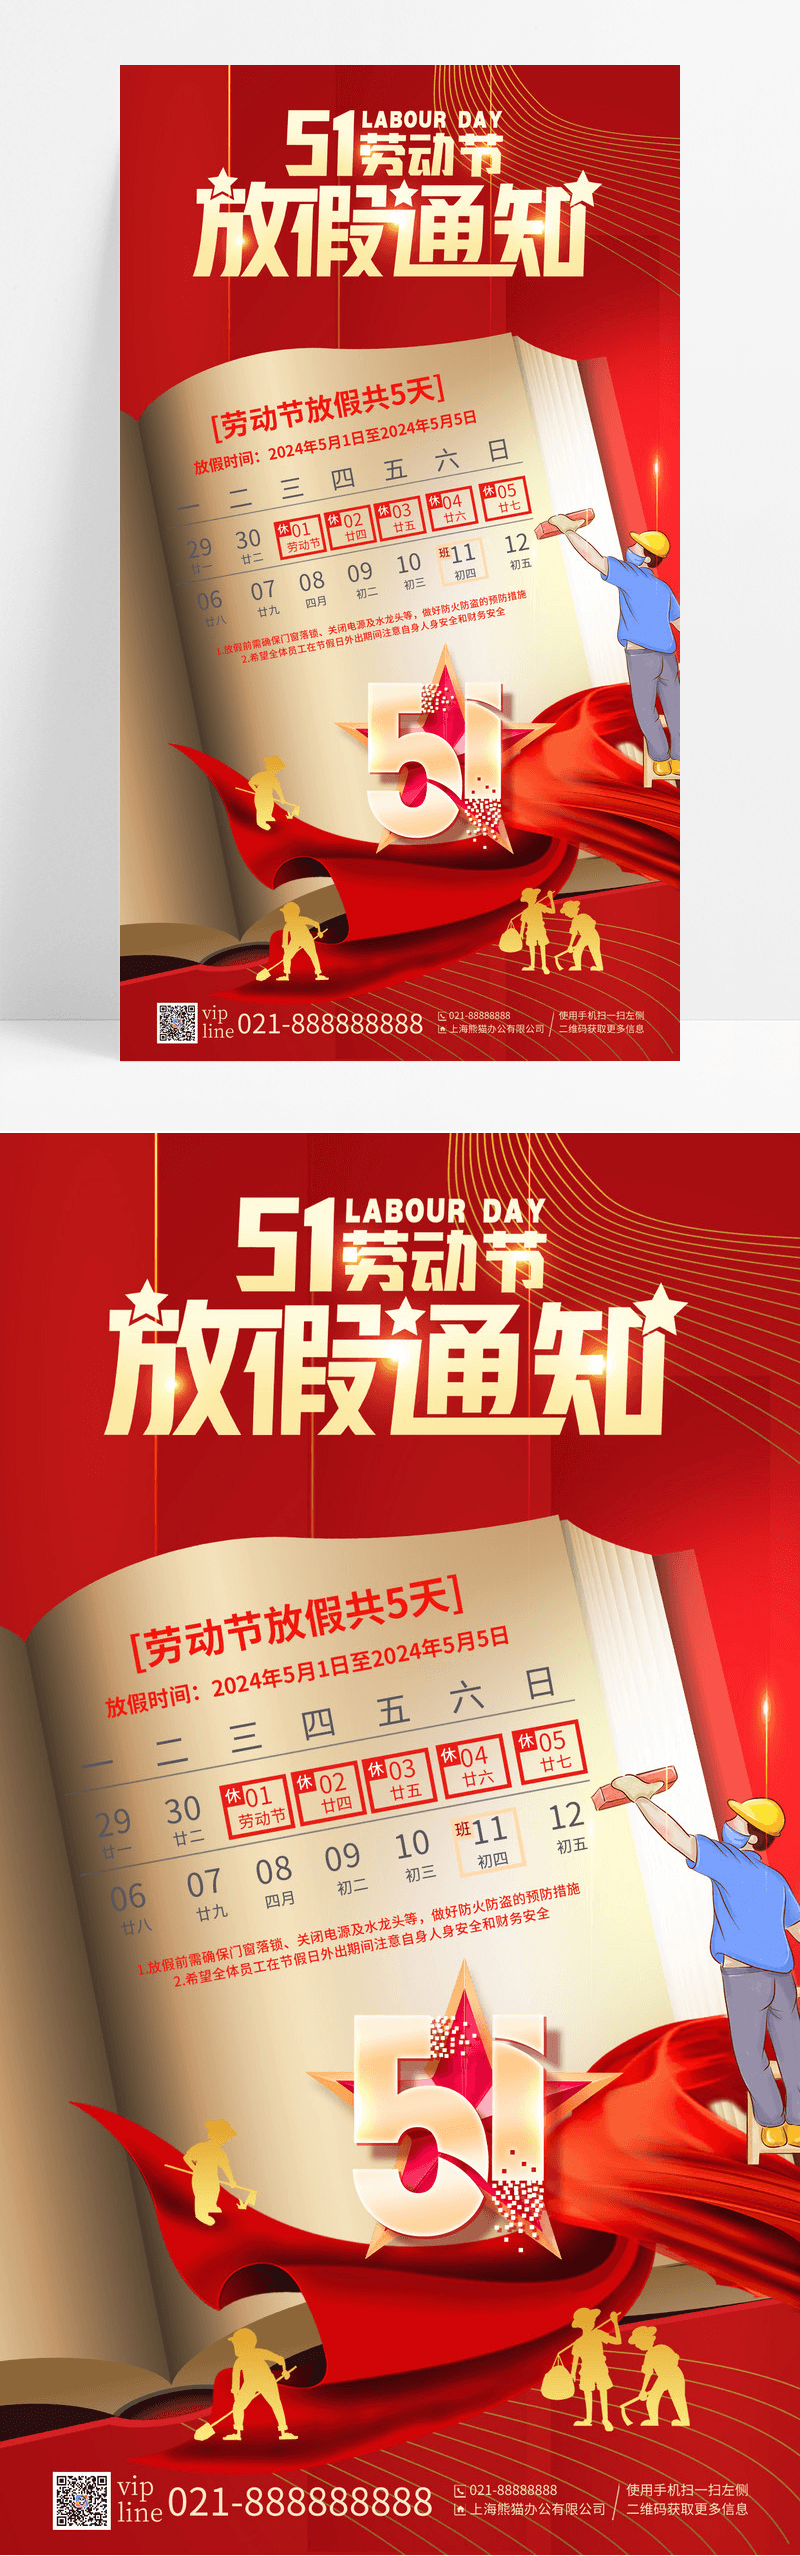 红色插画风51劳动节放假通知手机宣传海报